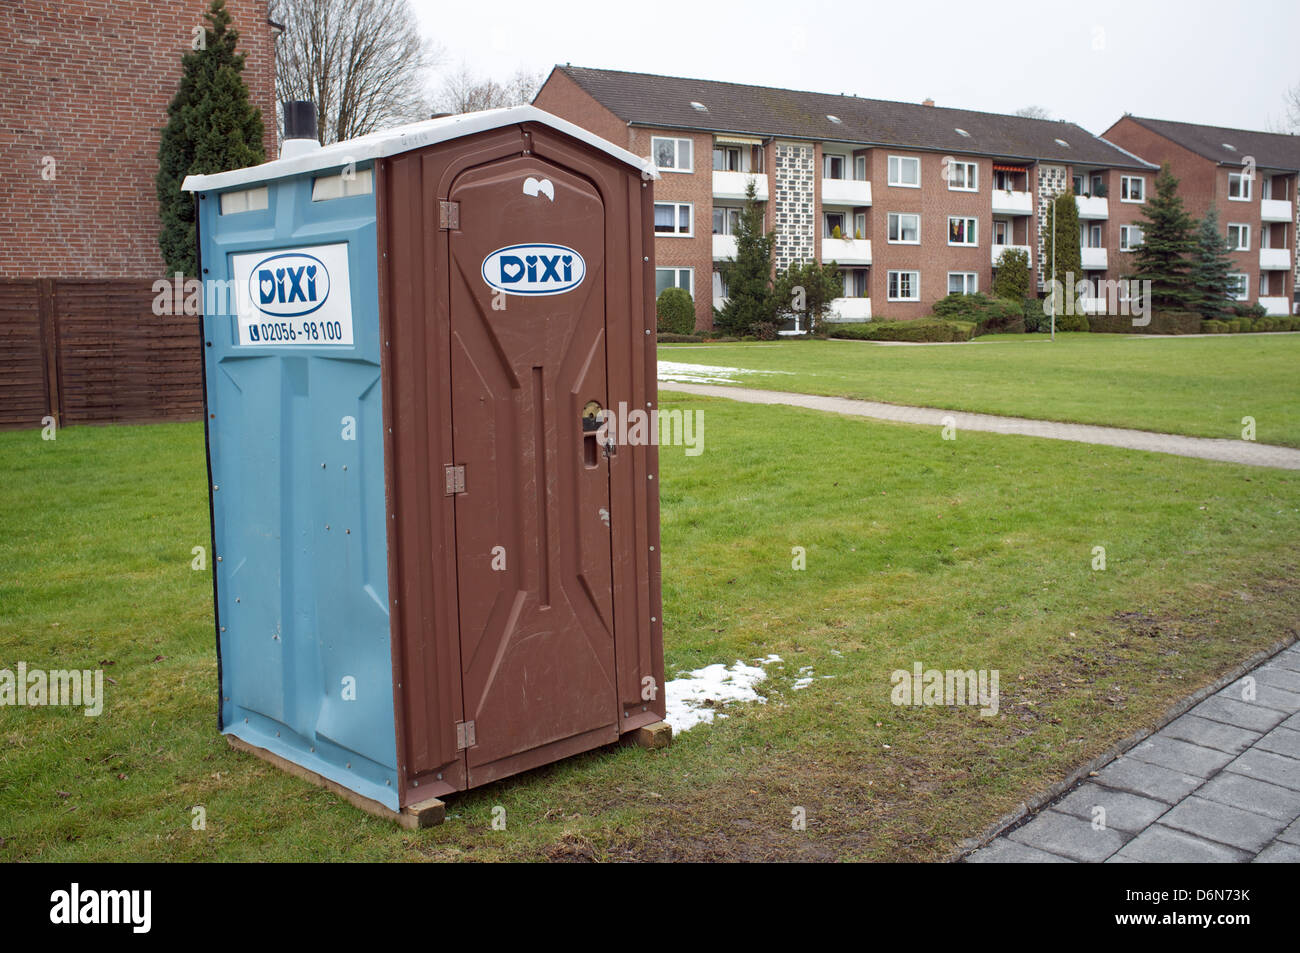 Dixi mobile toilet Stock Photo